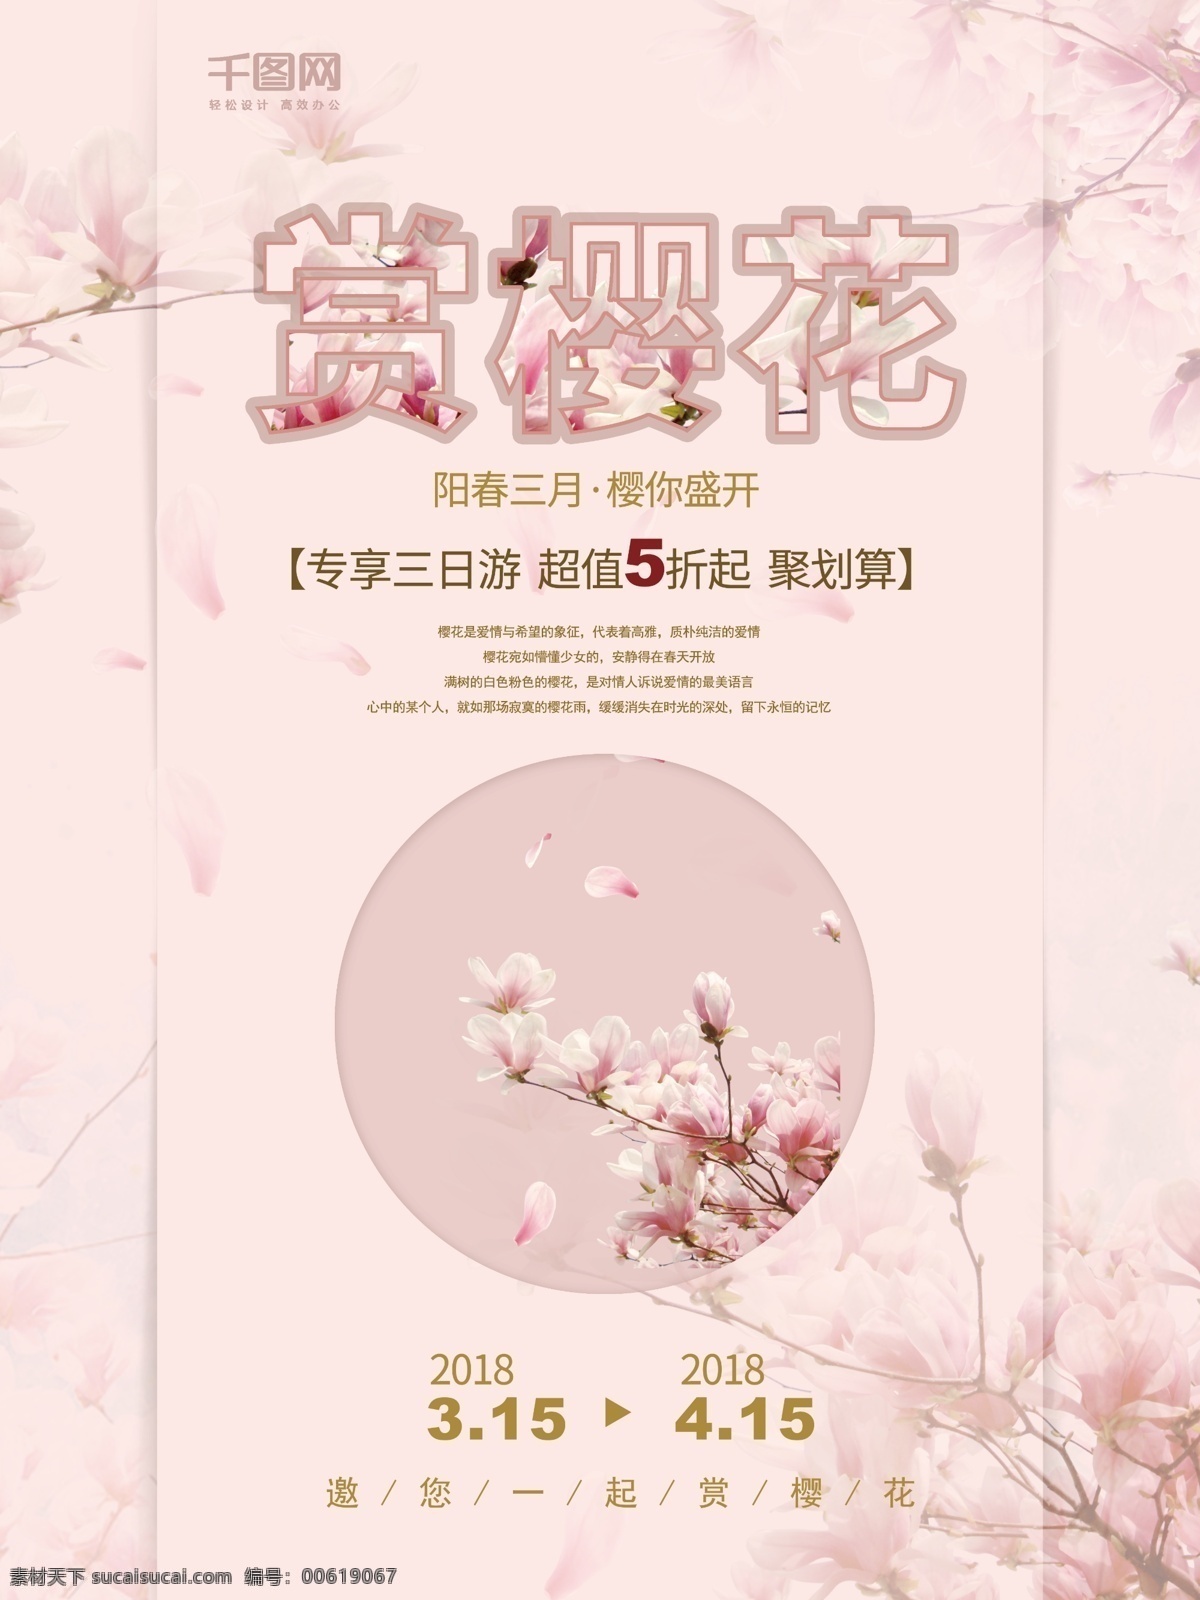 粉红色 清新 赏 樱花 旅游 海报 小清新 旅游海报 宣传海报 促销海报 樱花季